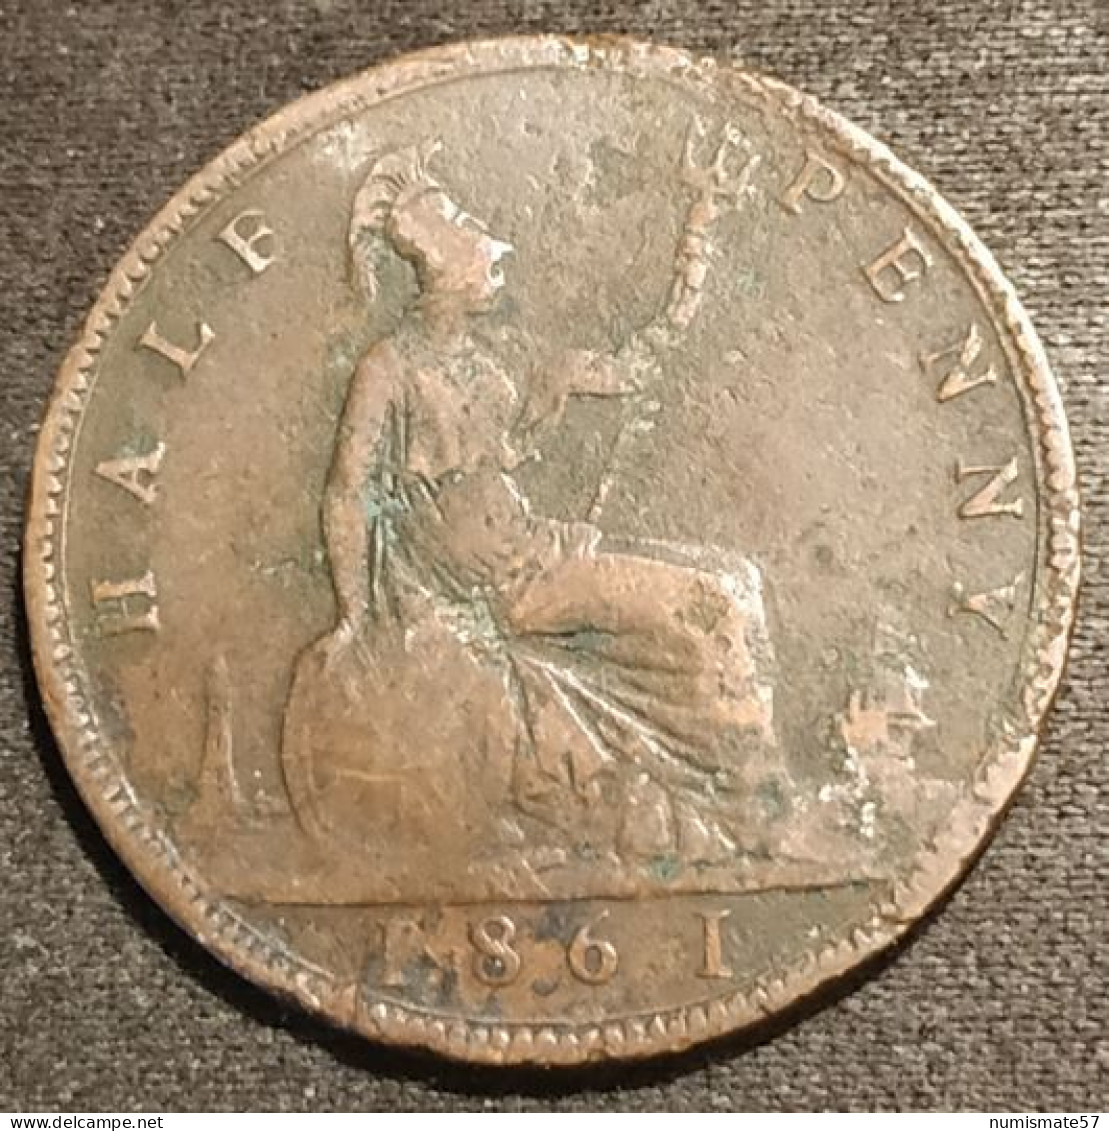 GRANDE BRETAGNE - ½ - 1/2 - HALF PENNY 1861 - Victoria - Bun Head - Lourde - KM 748.2 - C. 1/2 Penny